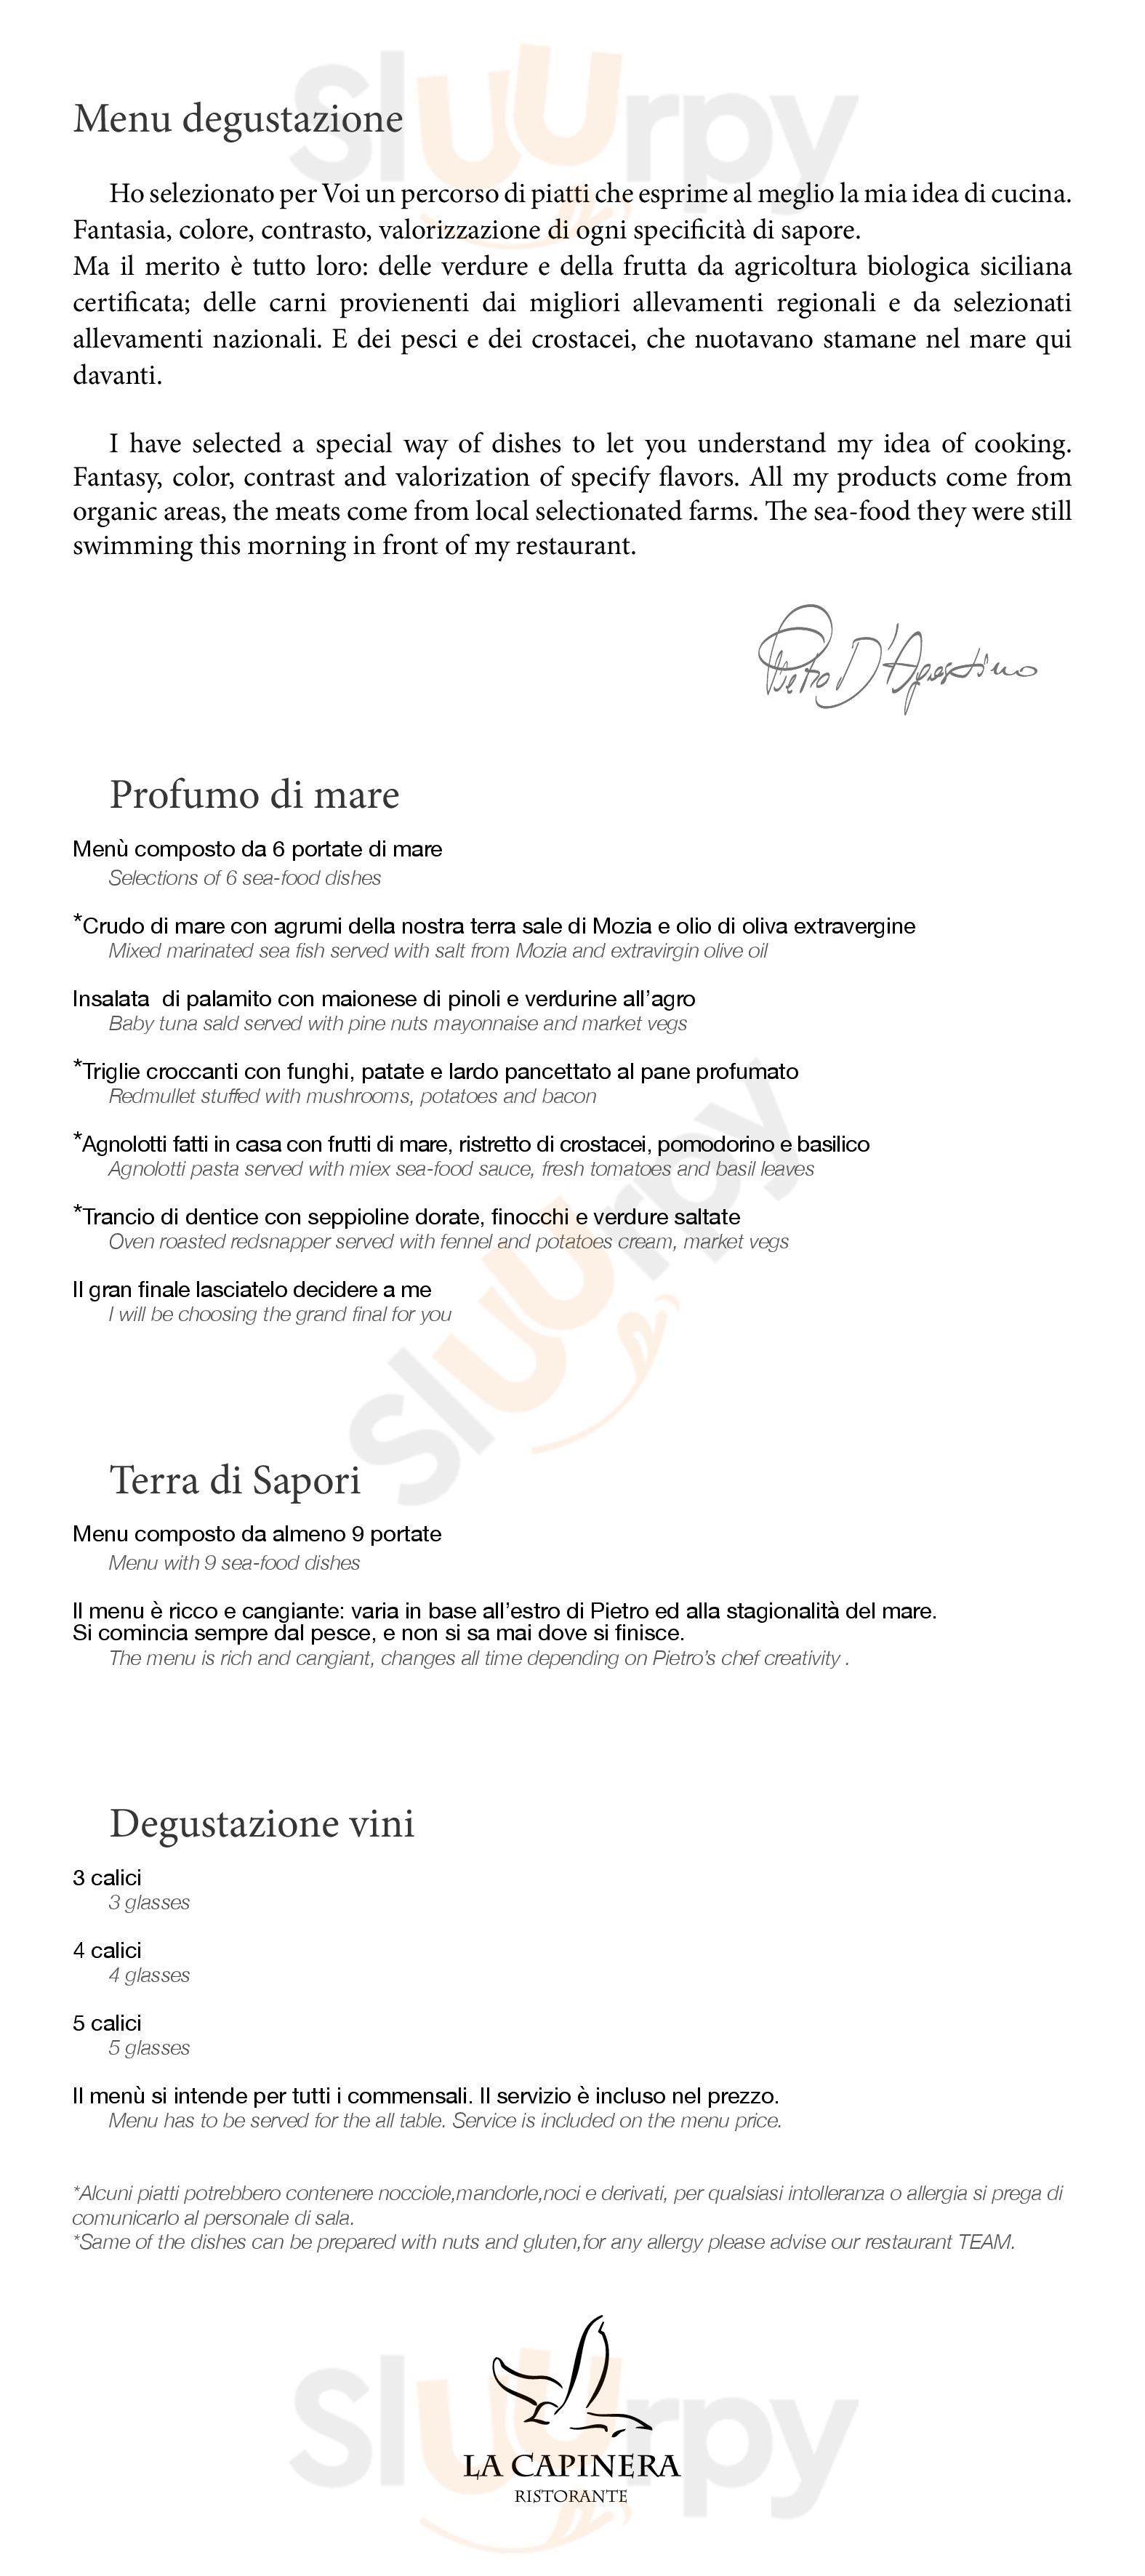 La Capinera Taormina menù 1 pagina